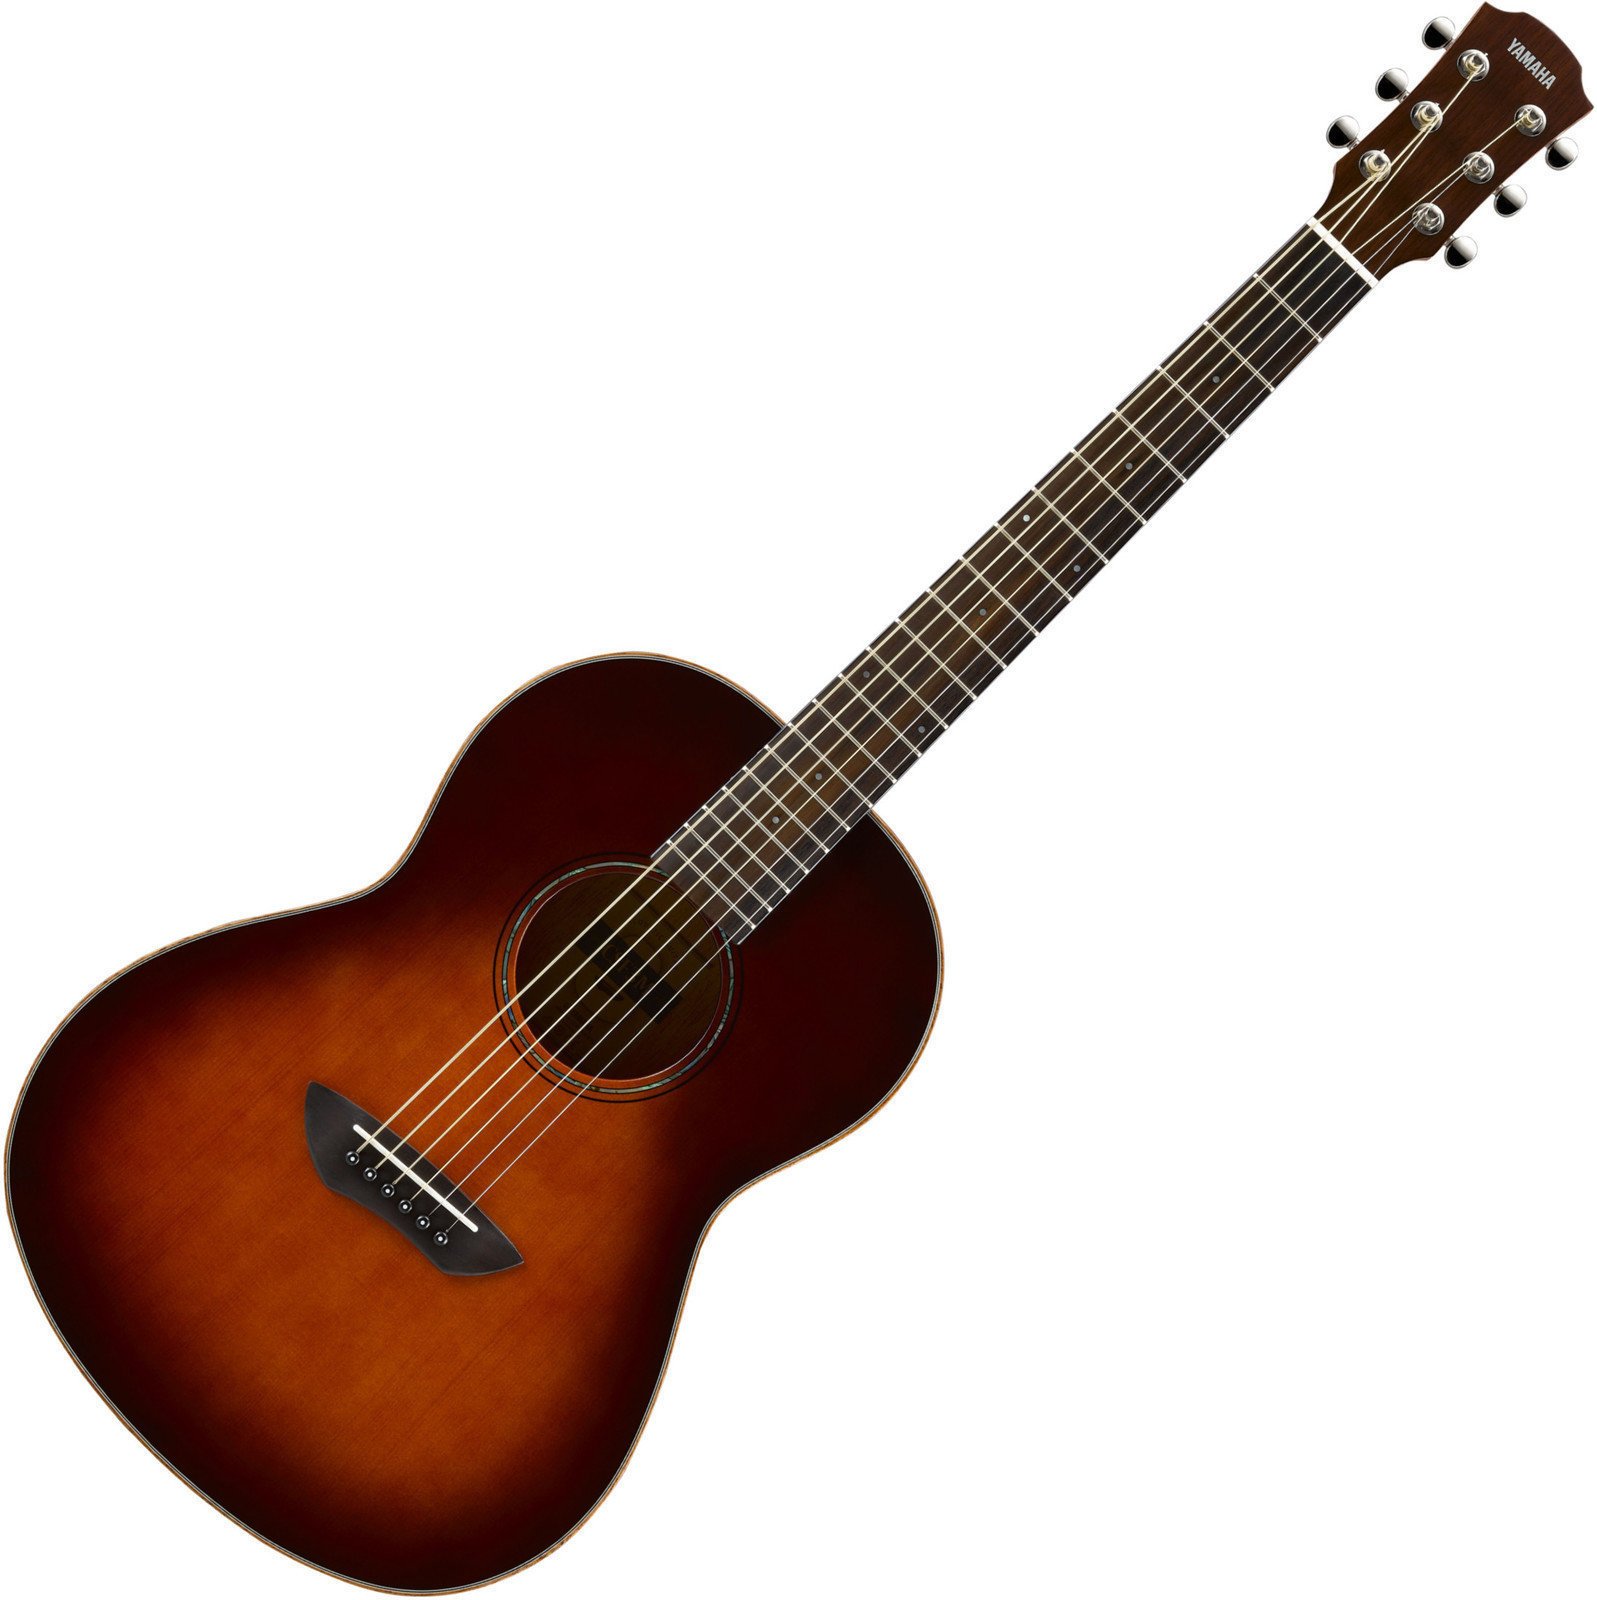 Electro-acoustic guitar Yamaha CSF3M Tobacco Sunburst